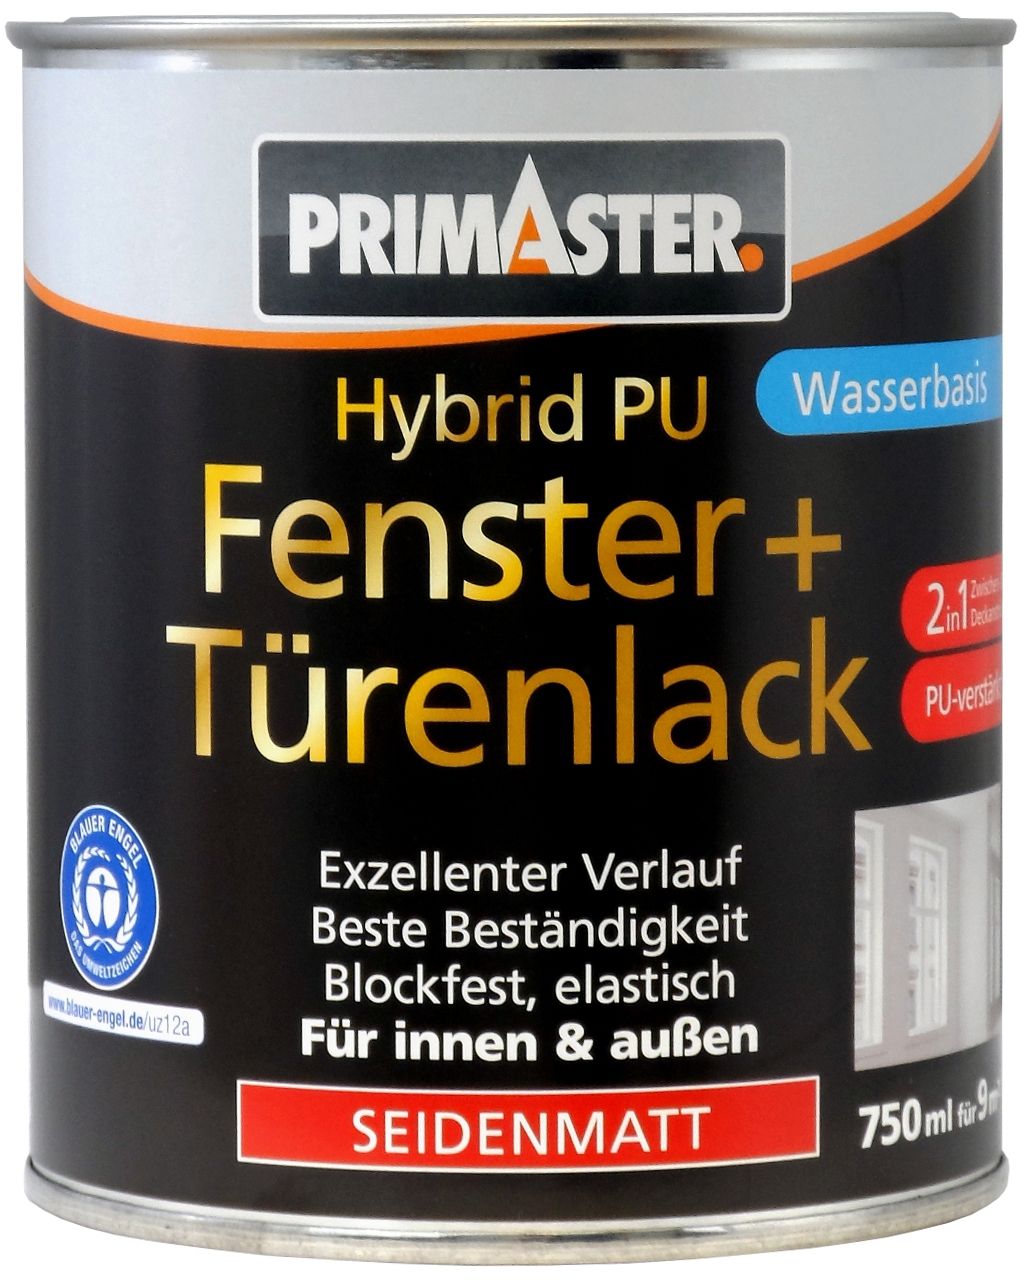 Primaster Hybrid-PU Fenster- u. Türenlack 750 ml weiß seidenmatt von Primaster